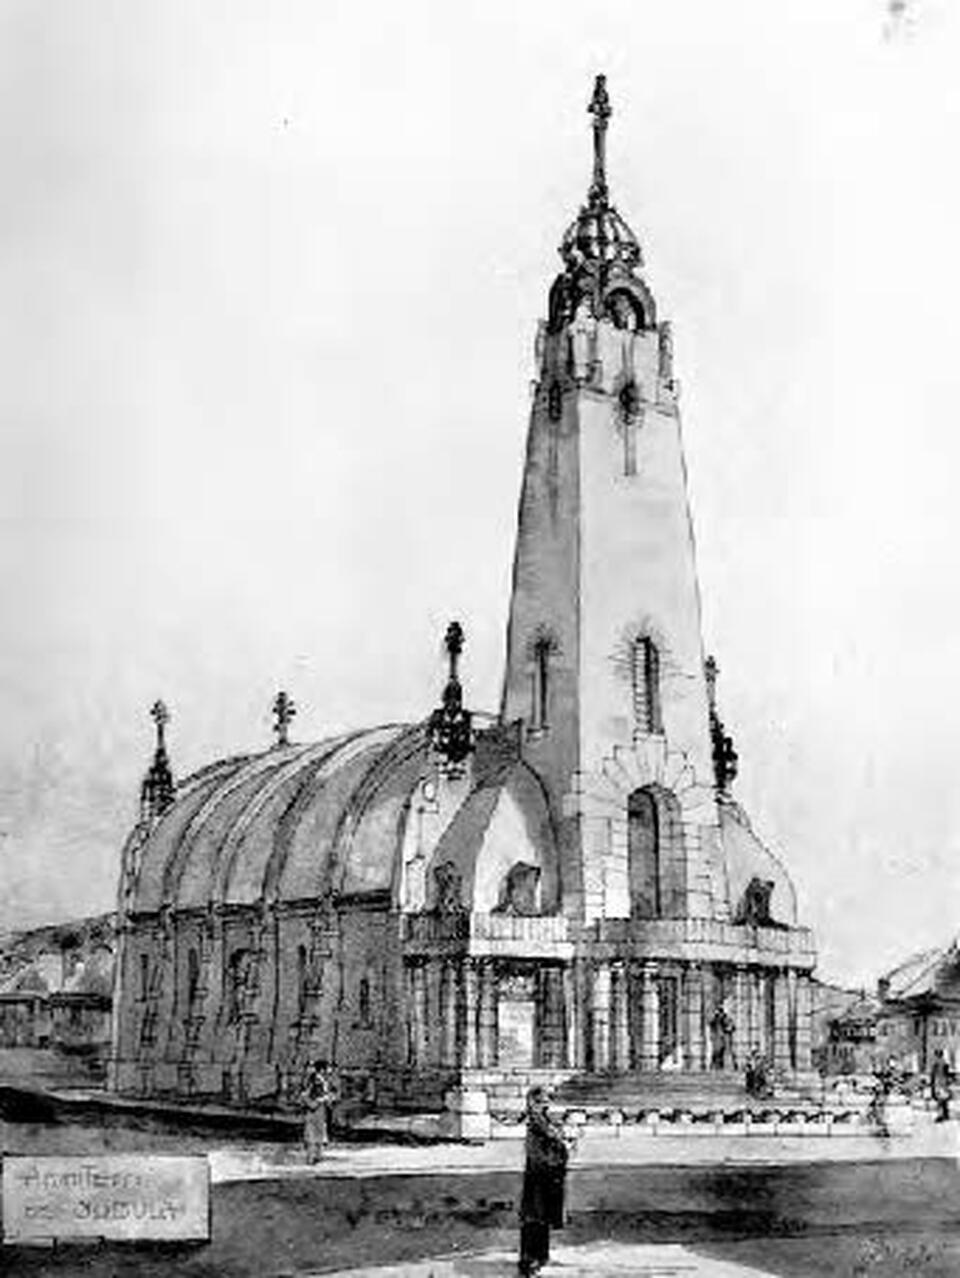 A pittsburgh-i Szent Miklós görögkatolikus templom terve 1903-ból, tervező: Bobula Titusz (PHLF News, 2013. december, 18. o.)